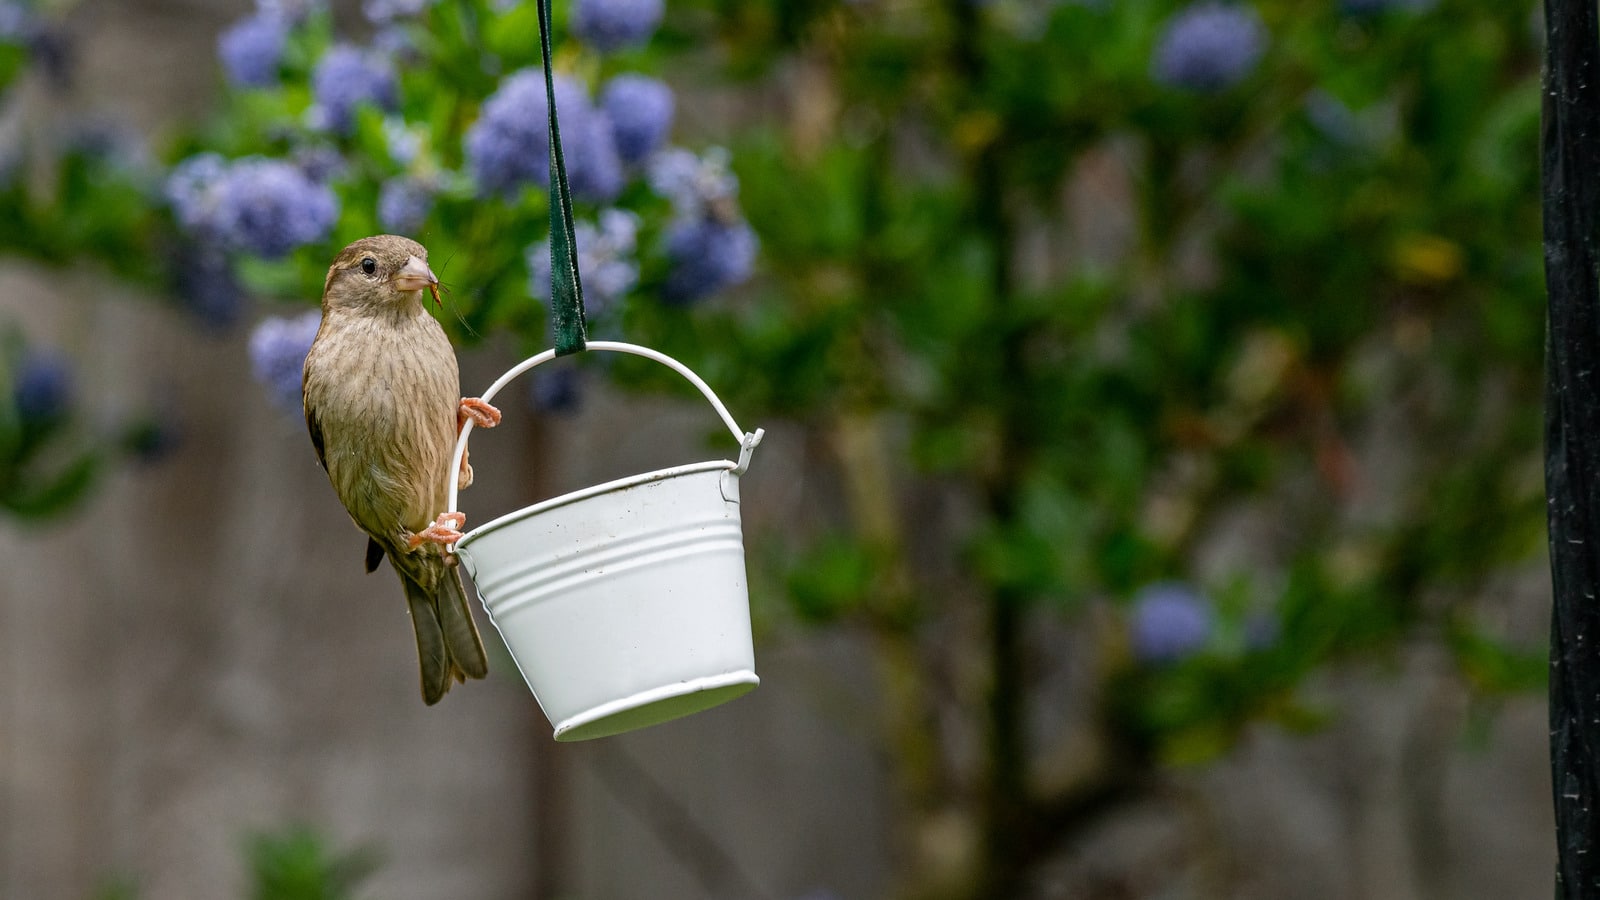 Débarrassez-vous des taches de crottes d’oiseaux à l’aide d’un produit pratique que vous possédez déjà